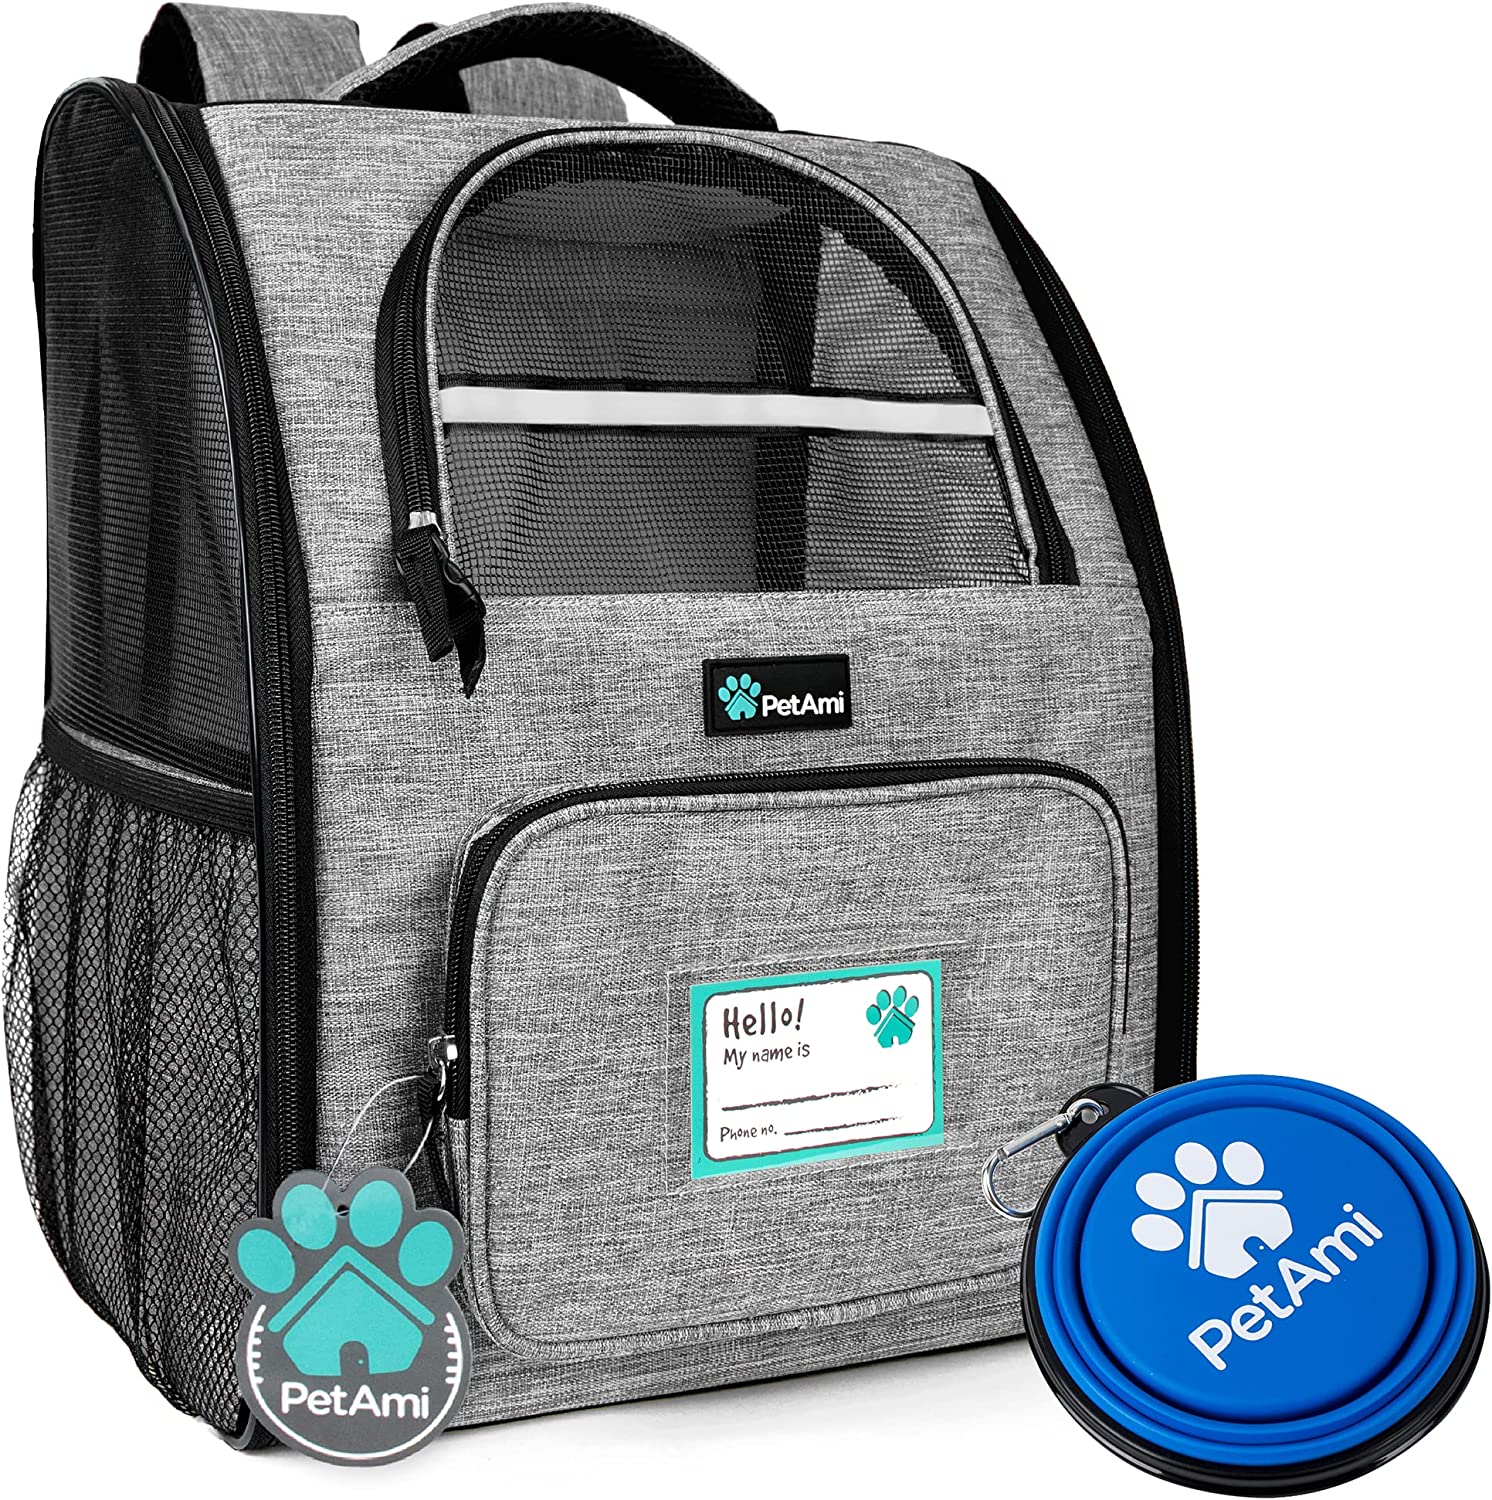 5. PetAmi Deluxe Pet Carrier Backpack